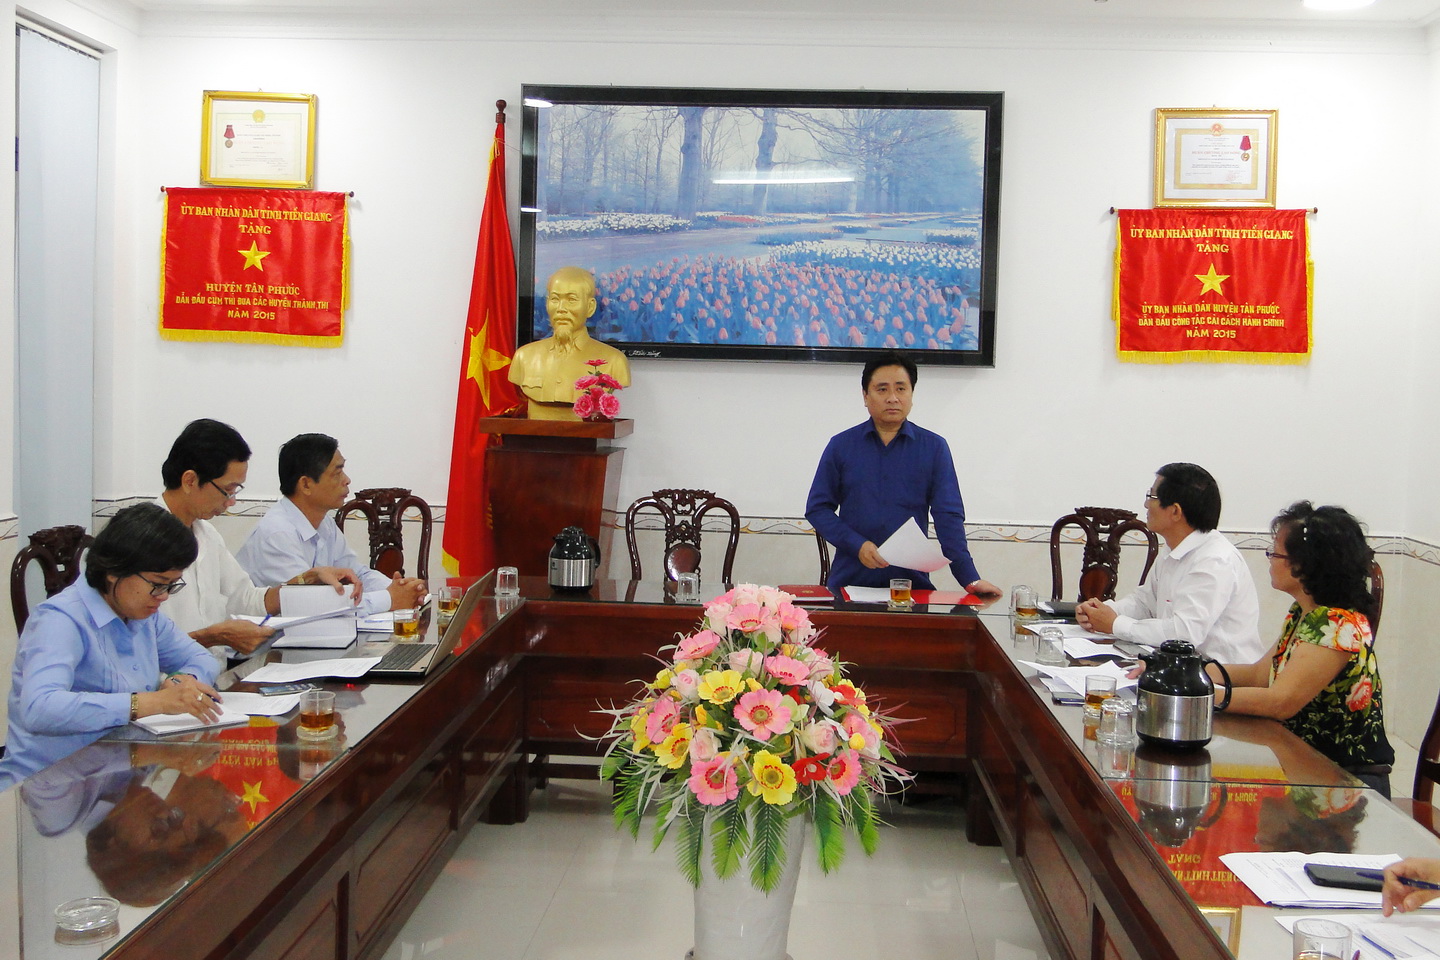  Phó Chủ tịch UBND tỉnh làm việc với Ban chỉ đạo phòng chống dịch bệnh huyện Tân Phước